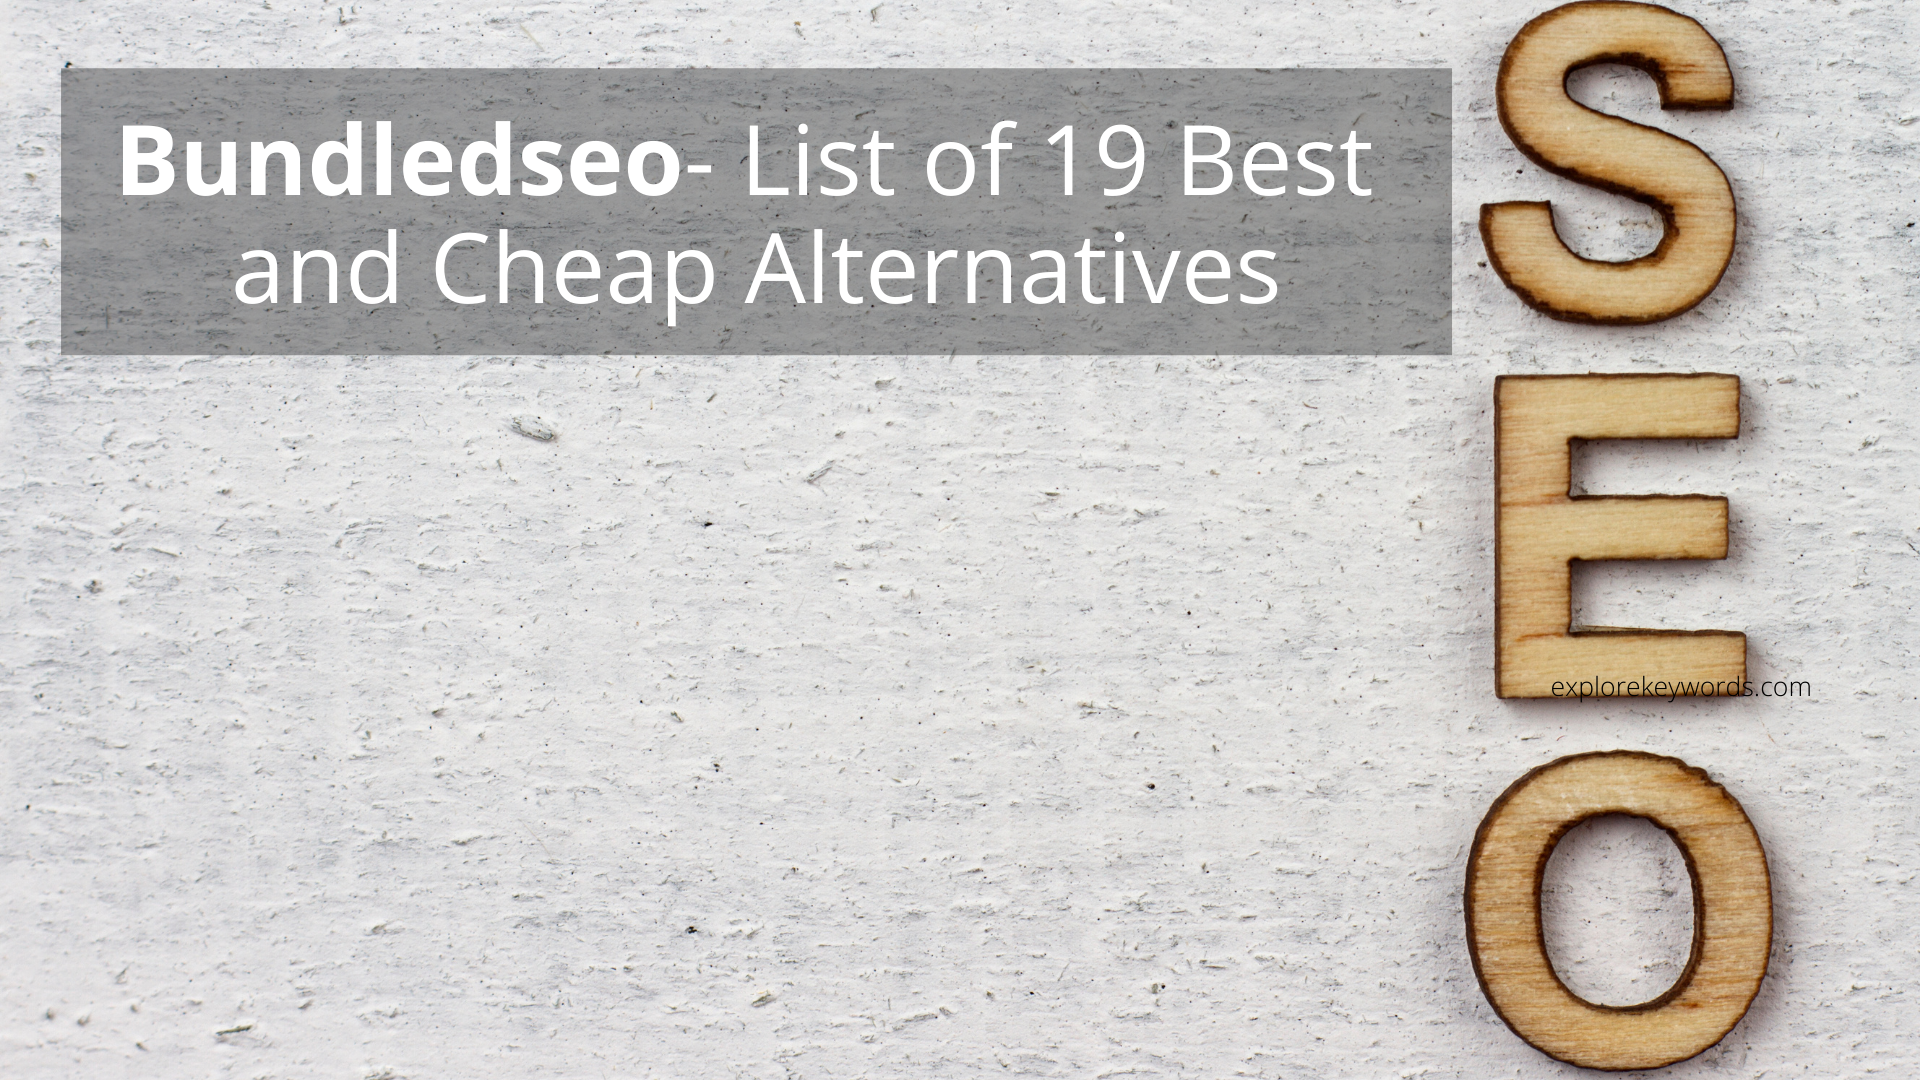 Bundledseo- List of 19 Best and Cheap Alternatives